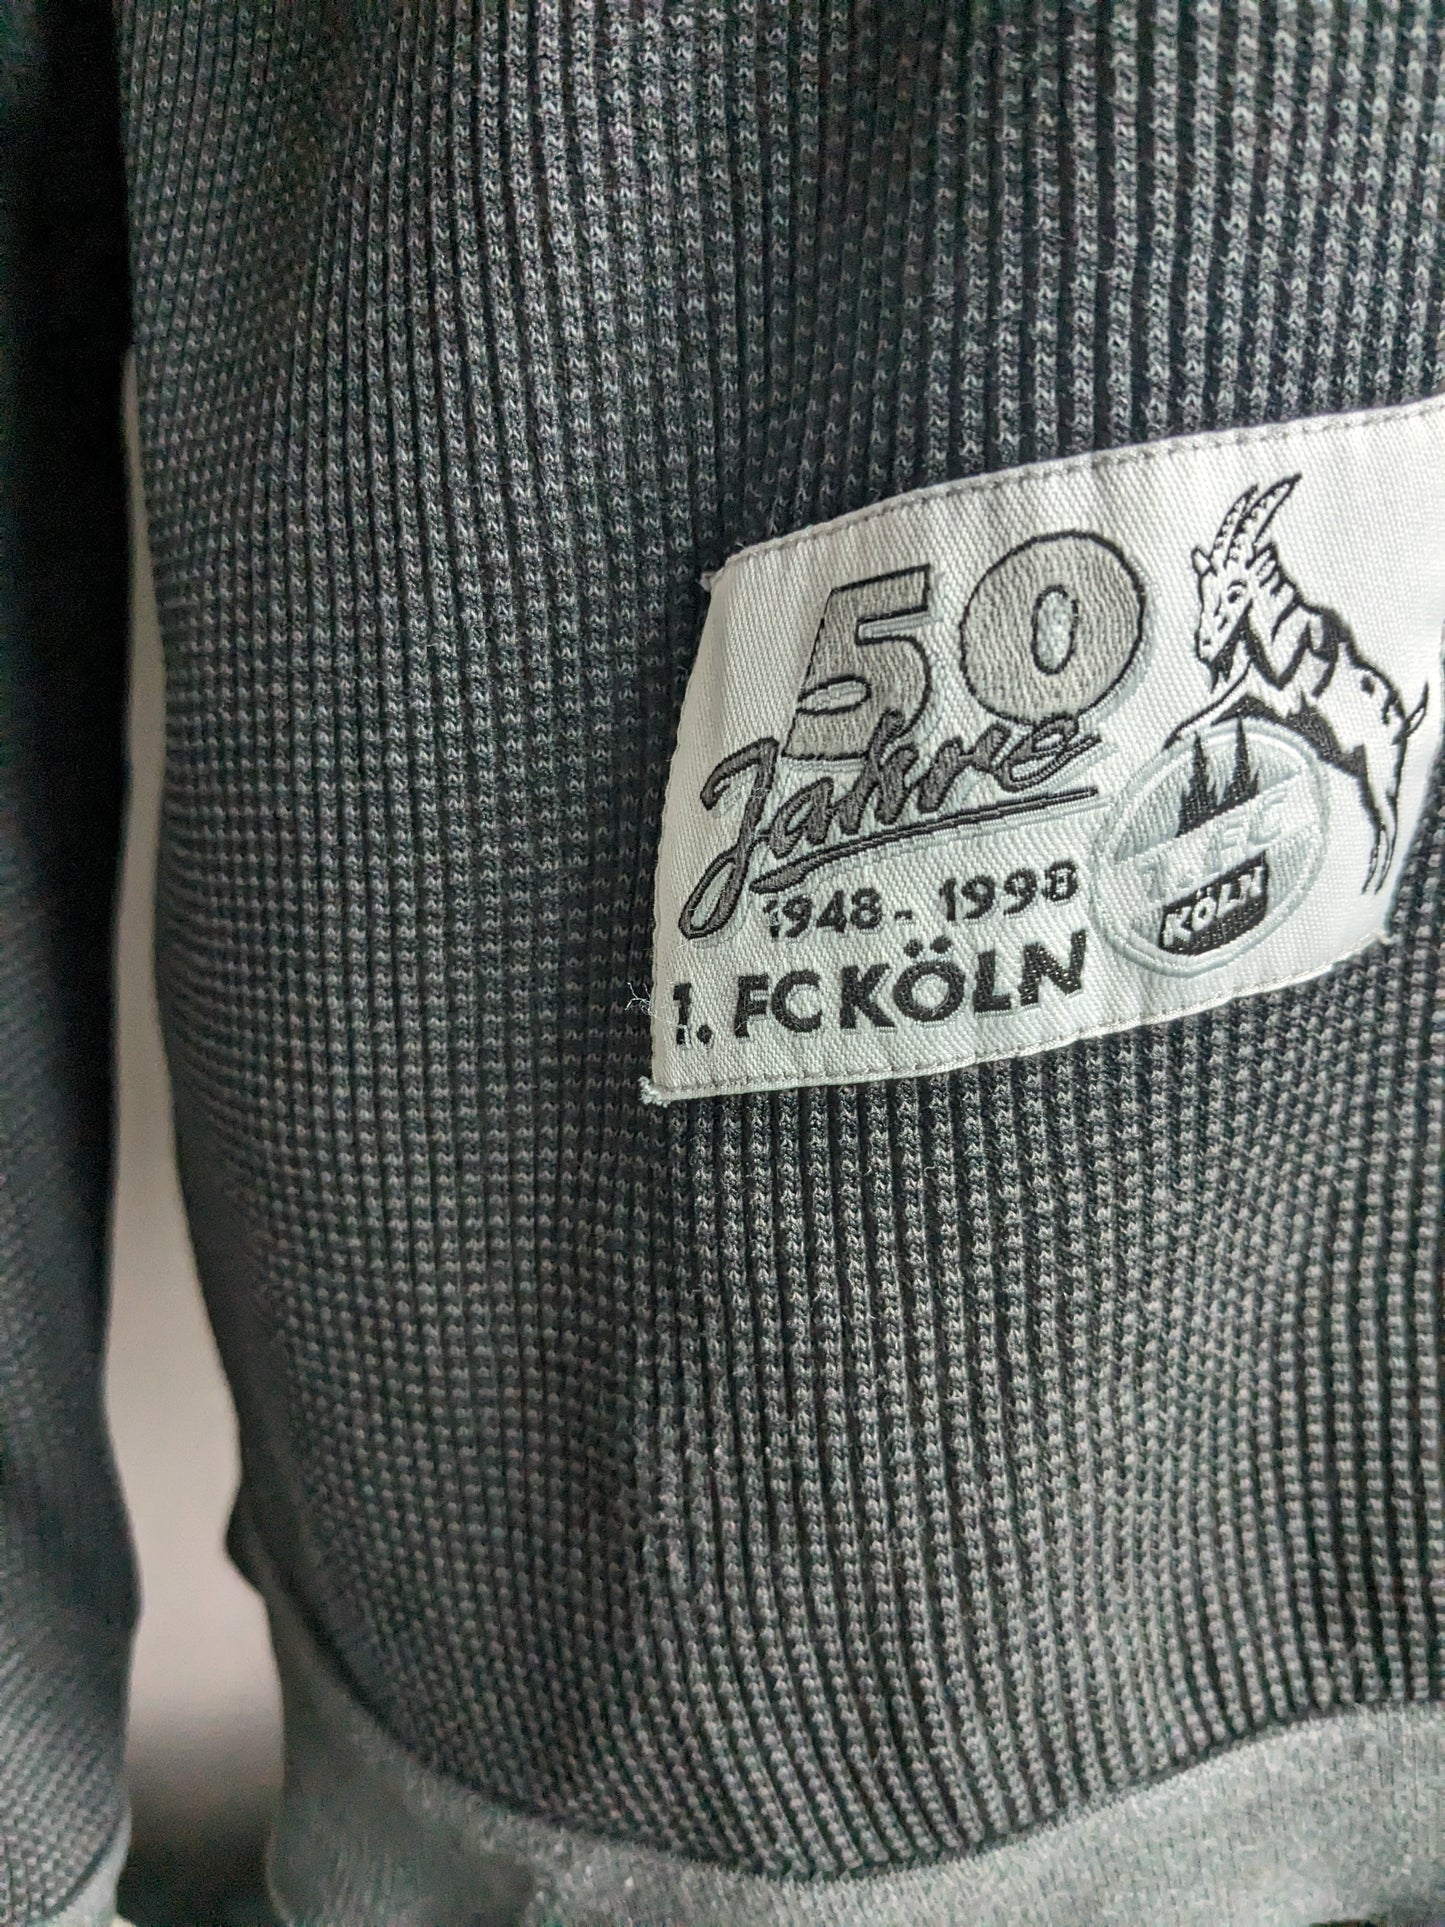 Einzigartiger Jubiläum FC Köln Pullover mit Reißverschluss. "50 Jahre fc köln". Dunkelgrau gefärbt. Größe xl.